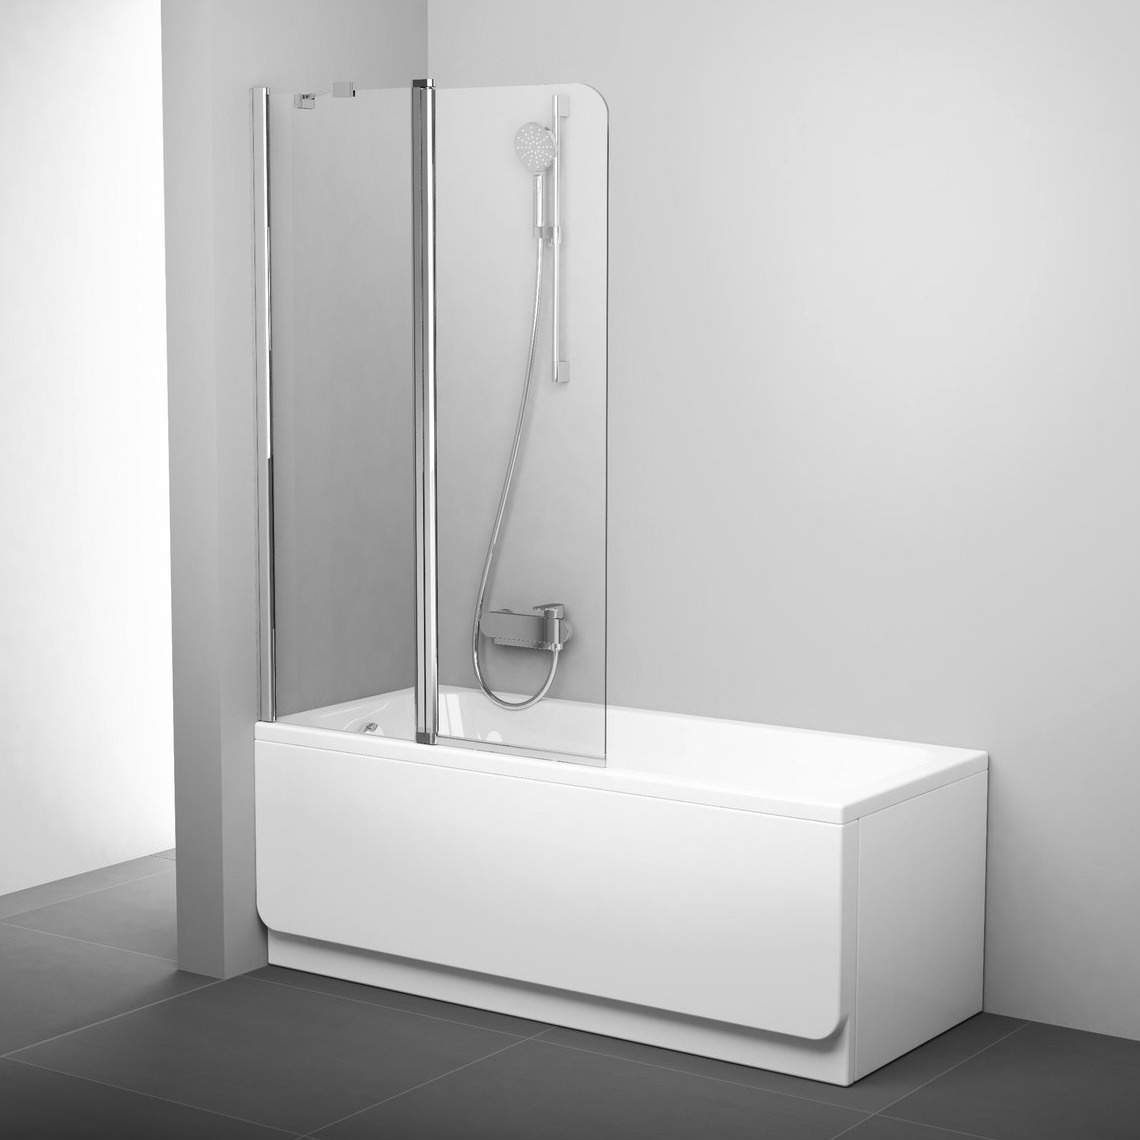 Шторка стеклянная для ванны двухсекционная распашная 150x99см RAVAK CHROME CVS2-100 L стекло прозрачное 6мм профиль хром 7QLA0C00Z1